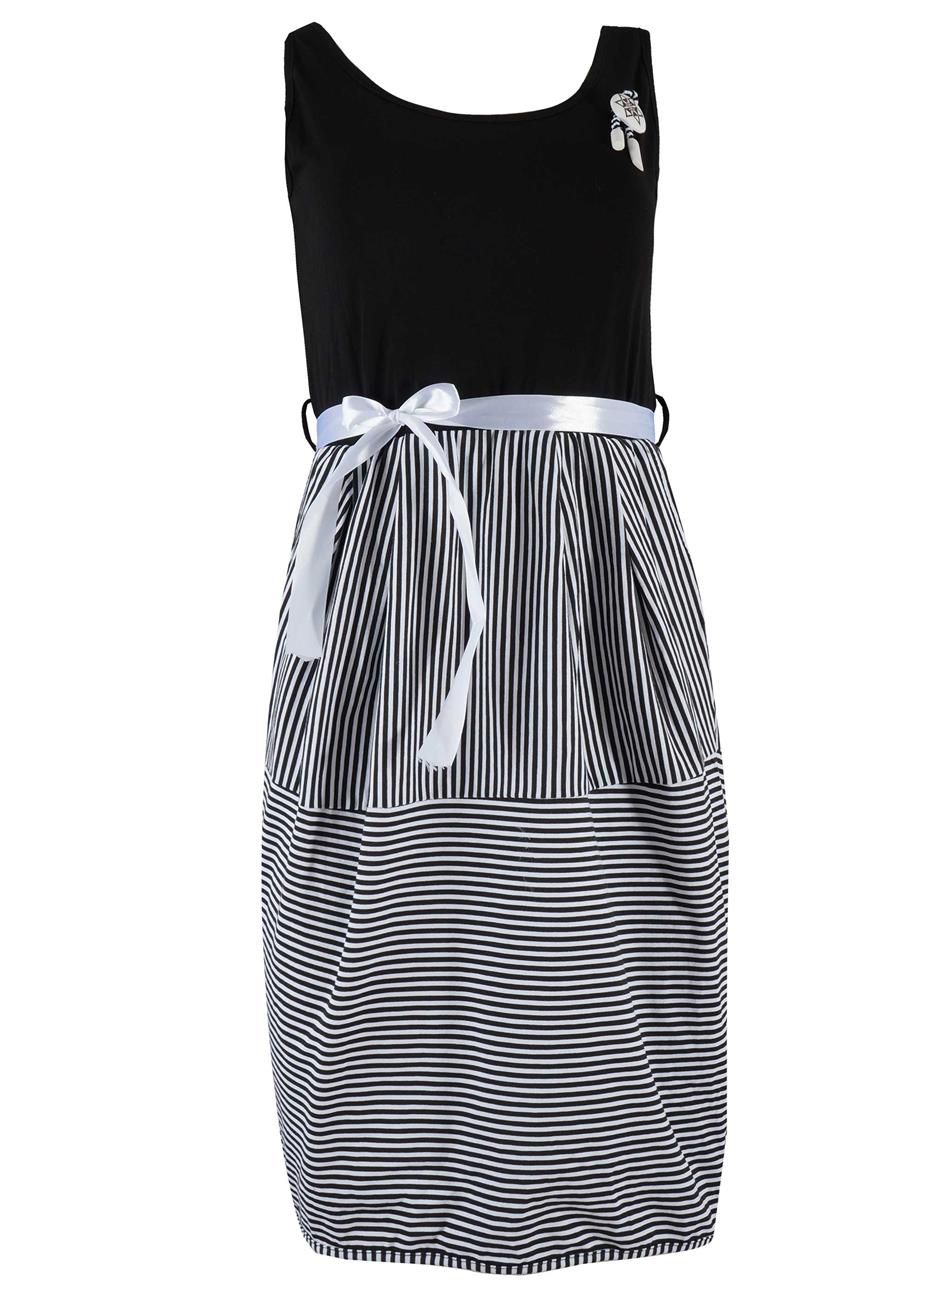 Φόρεμα midii stripes print. Girly style